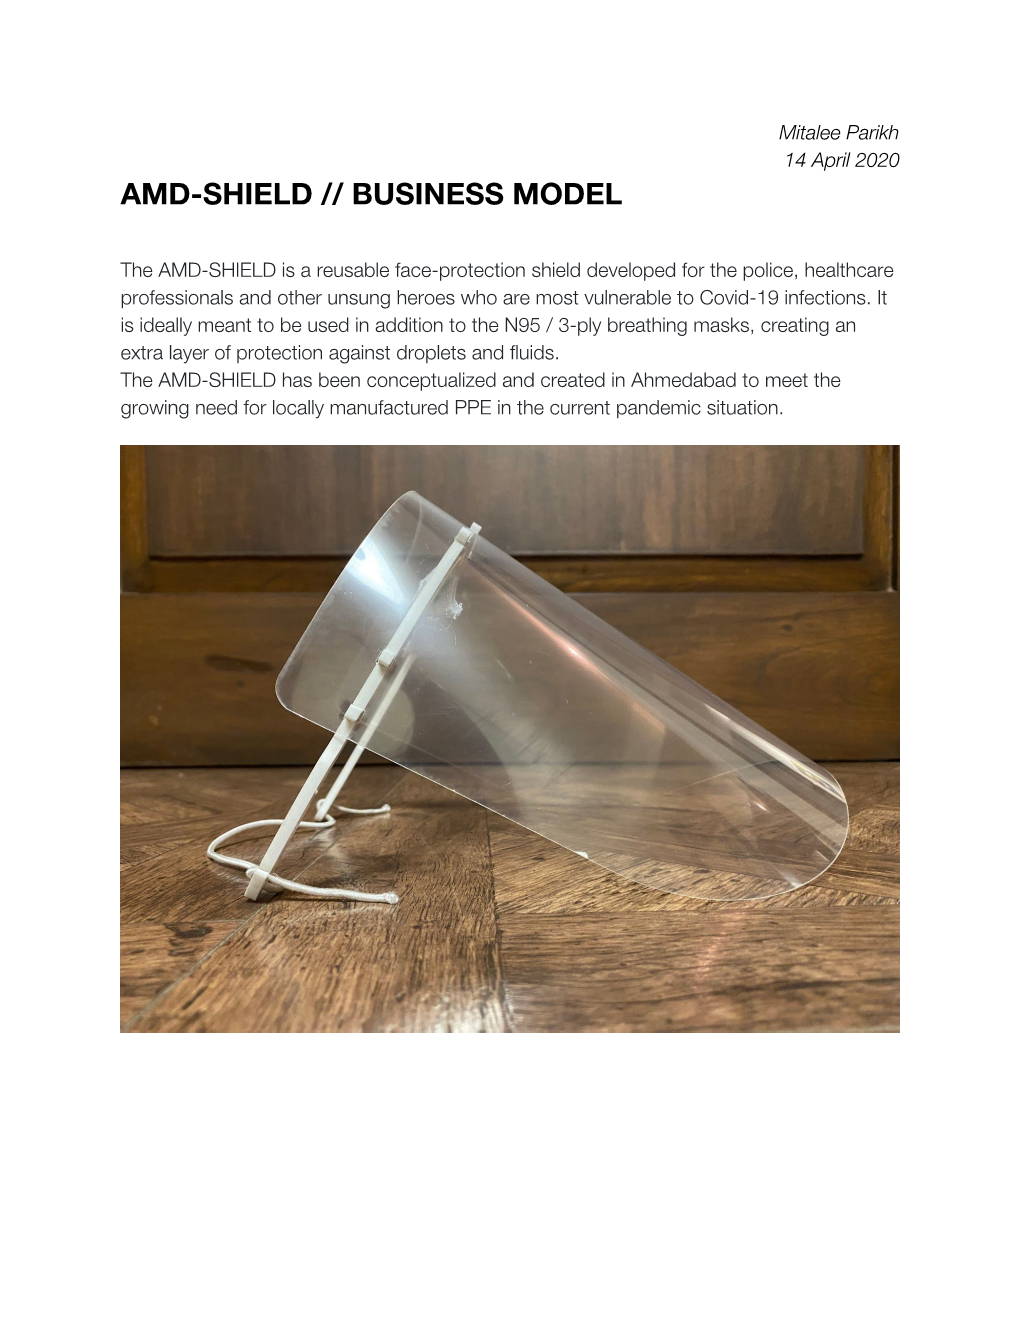 Amd-Shield // Business Model